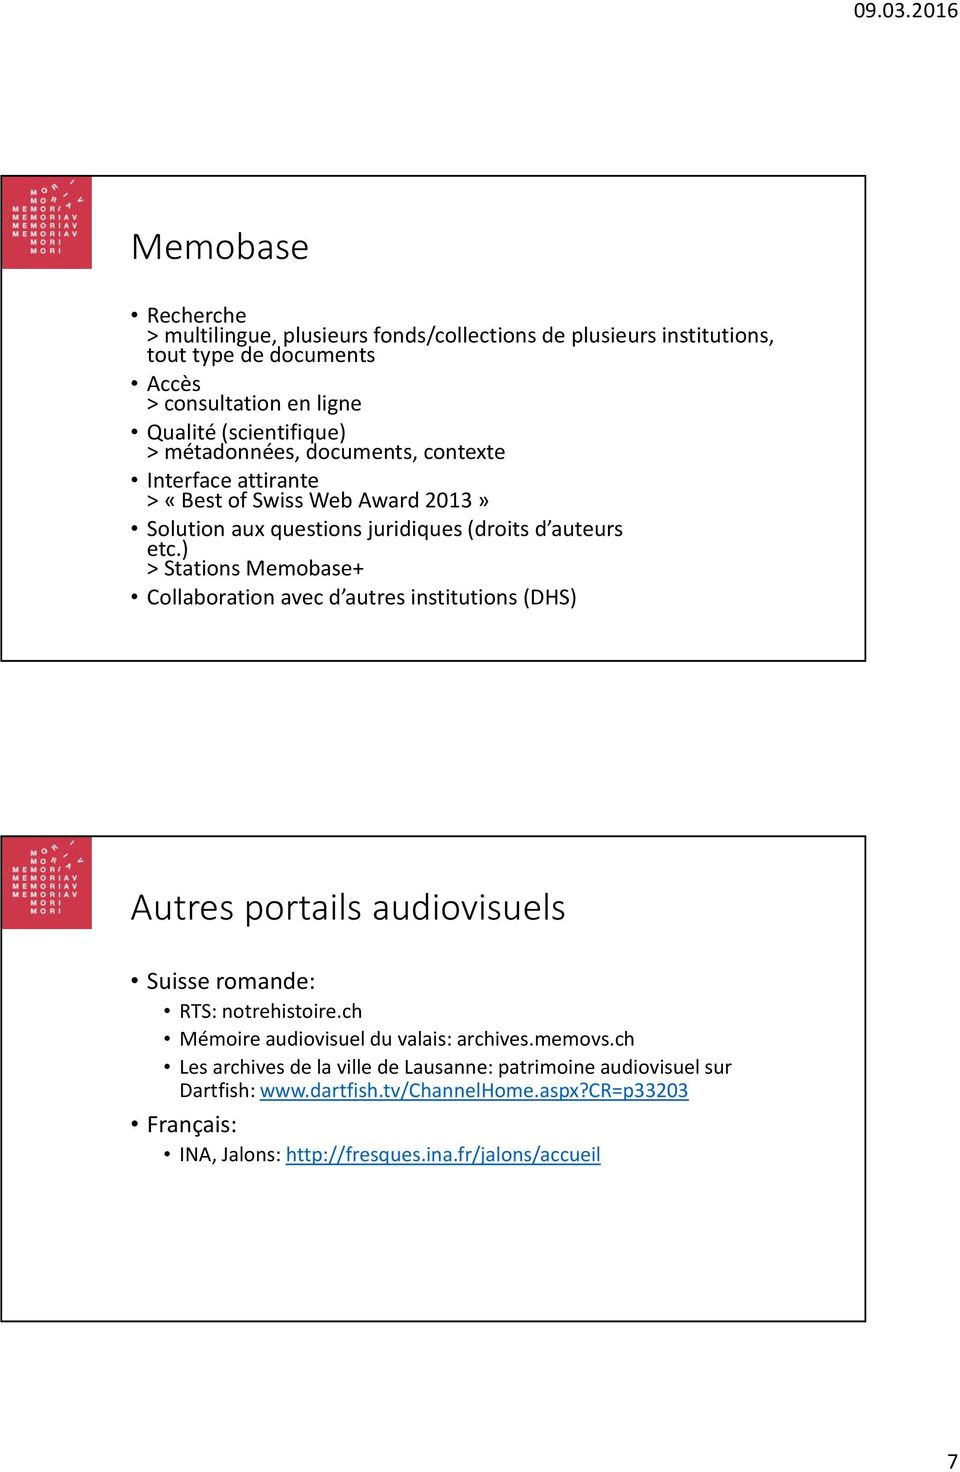 ) > Stations Memobase+ Collaboration avec d autres institutions (DHS) Autres portails audiovisuels Suisse romande: RTS: notrehistoire.